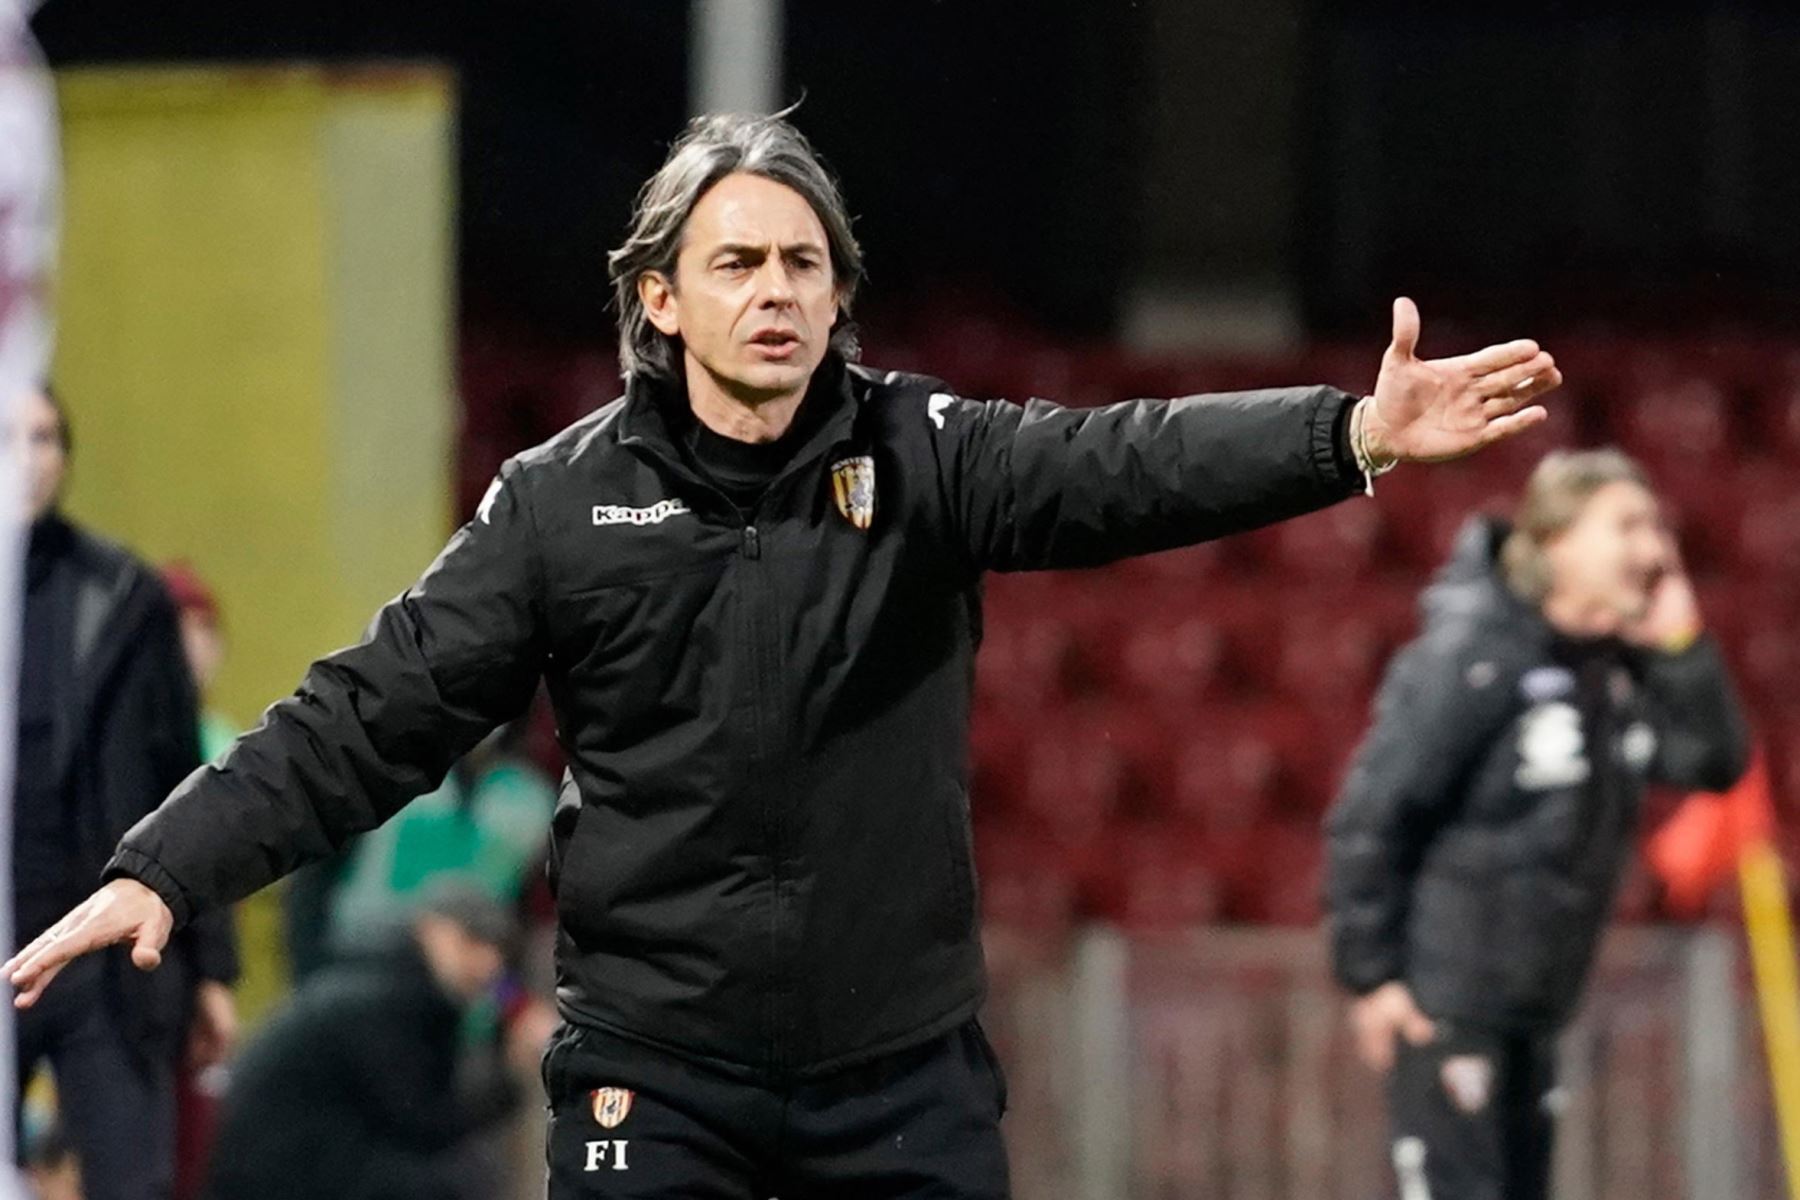 El entrenador del Benevento Calcio, Filippo Inzaghi, hace gestos durante el partido de fútbol de la Serie A italiana Benevento Calcio vs Torino FC en el estadio Ciro Vigorito en Benevento.
Foto: